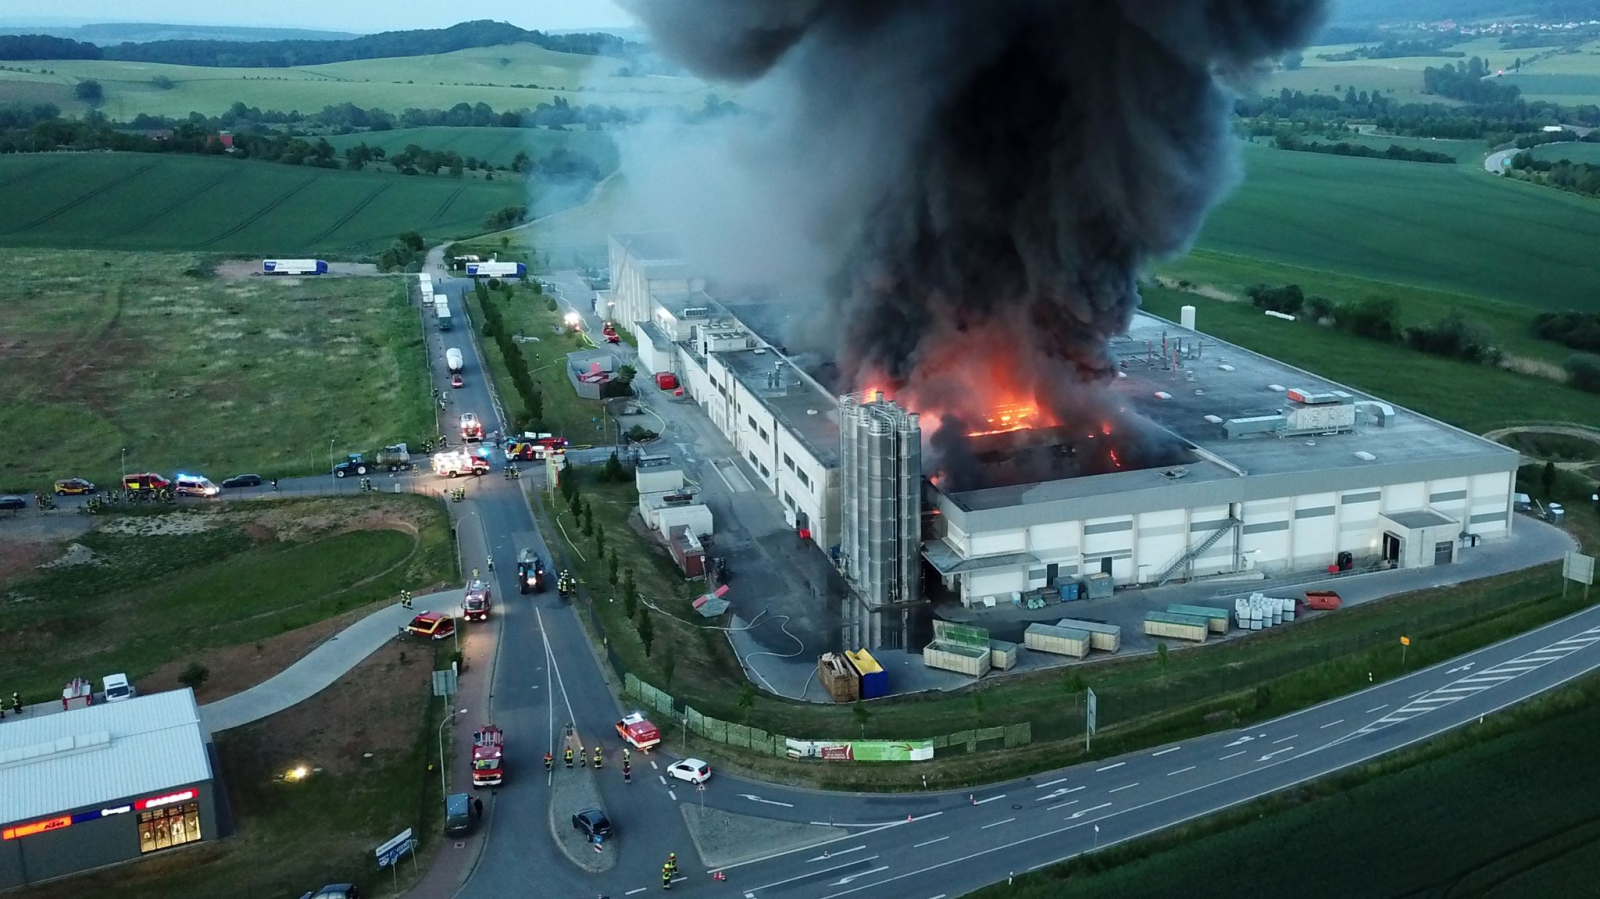 Einsatzkräfte der Feuerwehr löschen den Brand in der Großbäckerei in Bleicherode.